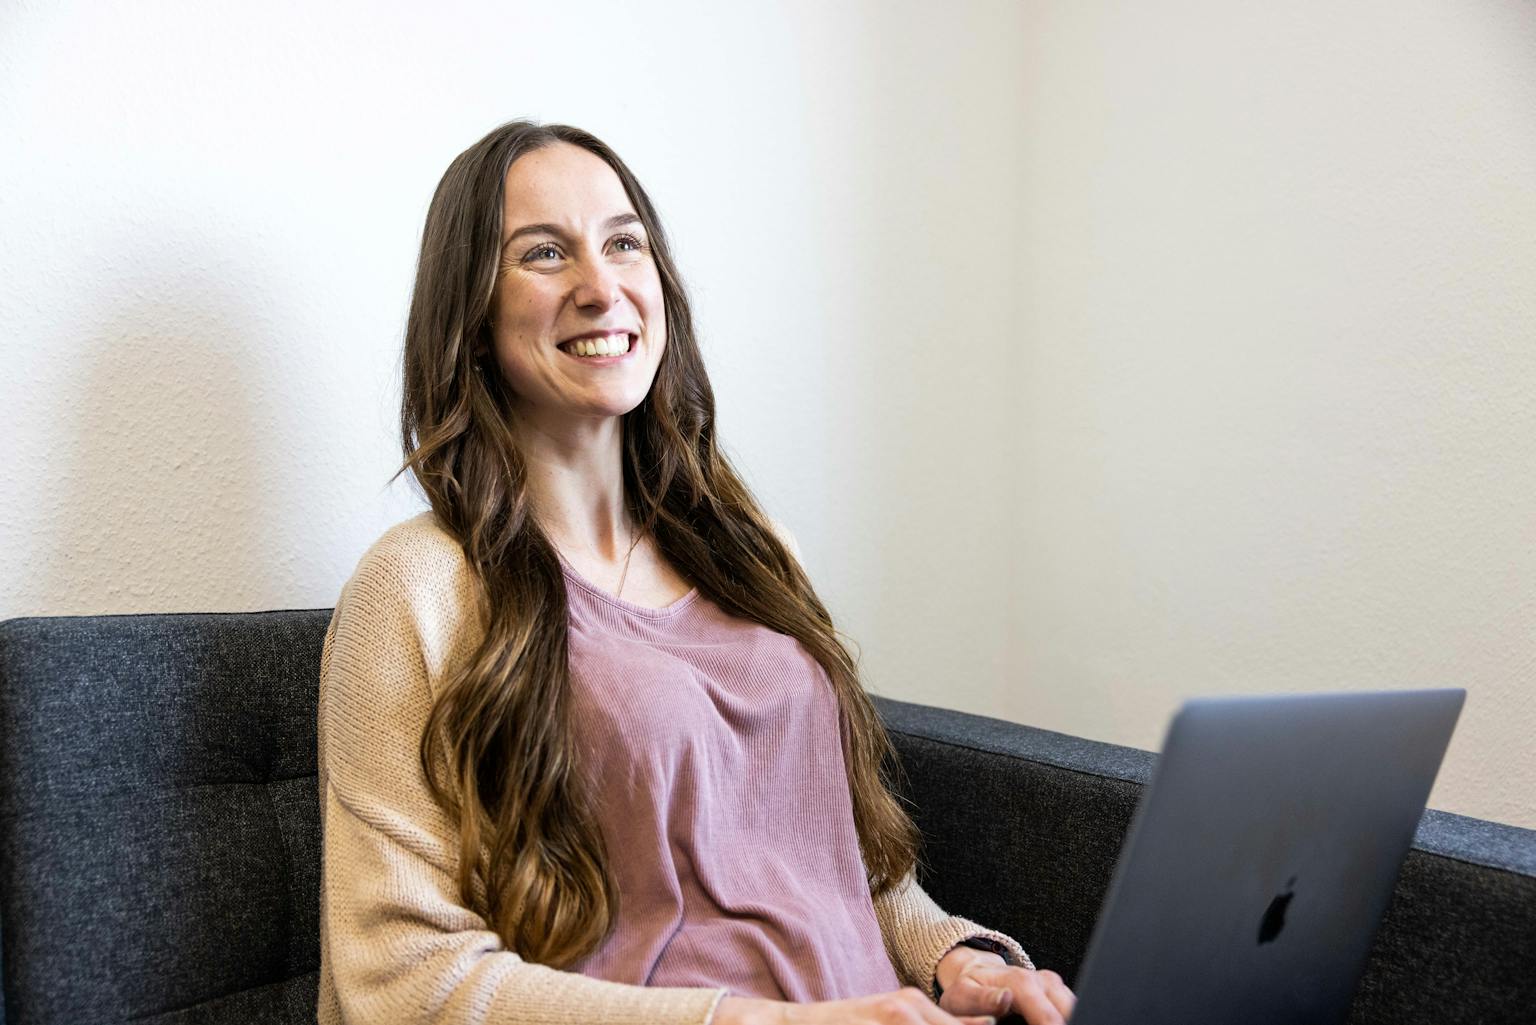 Eine junge Frau mit langen Haaren sitzt mit ihrem Laptop auf dem Sofa und grinst freundlich.